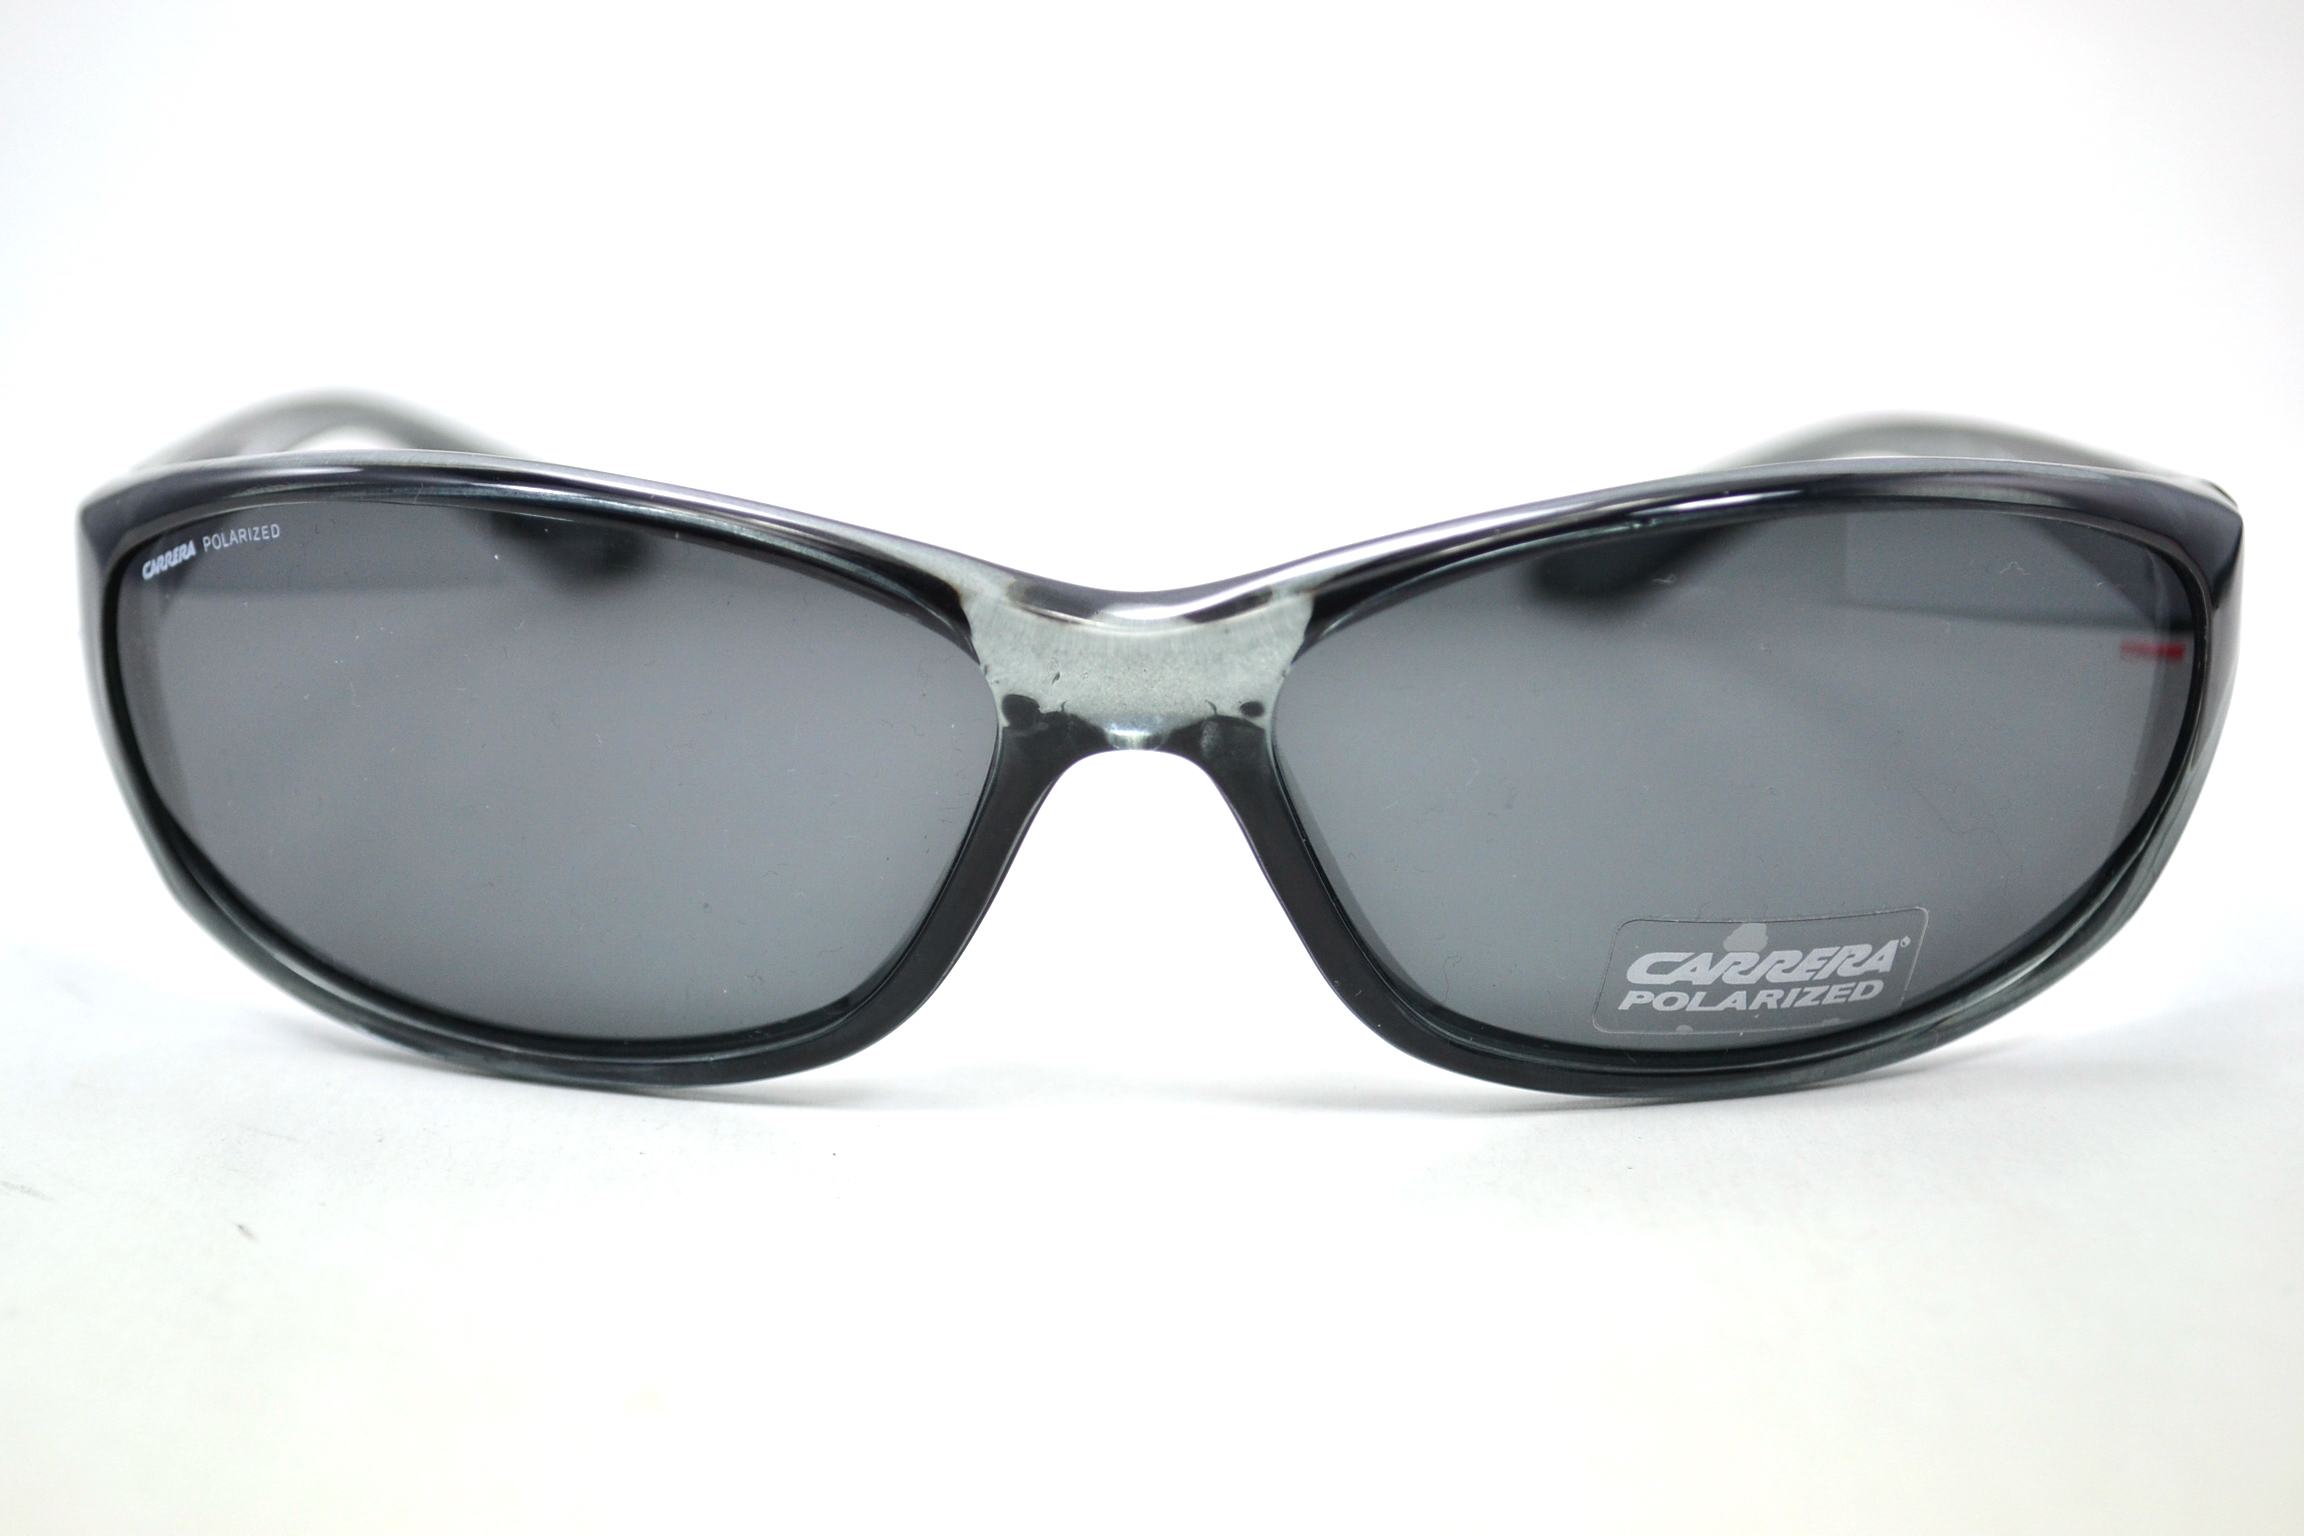 Designer Frames Outlet. Carrera Sunglasses 903/S